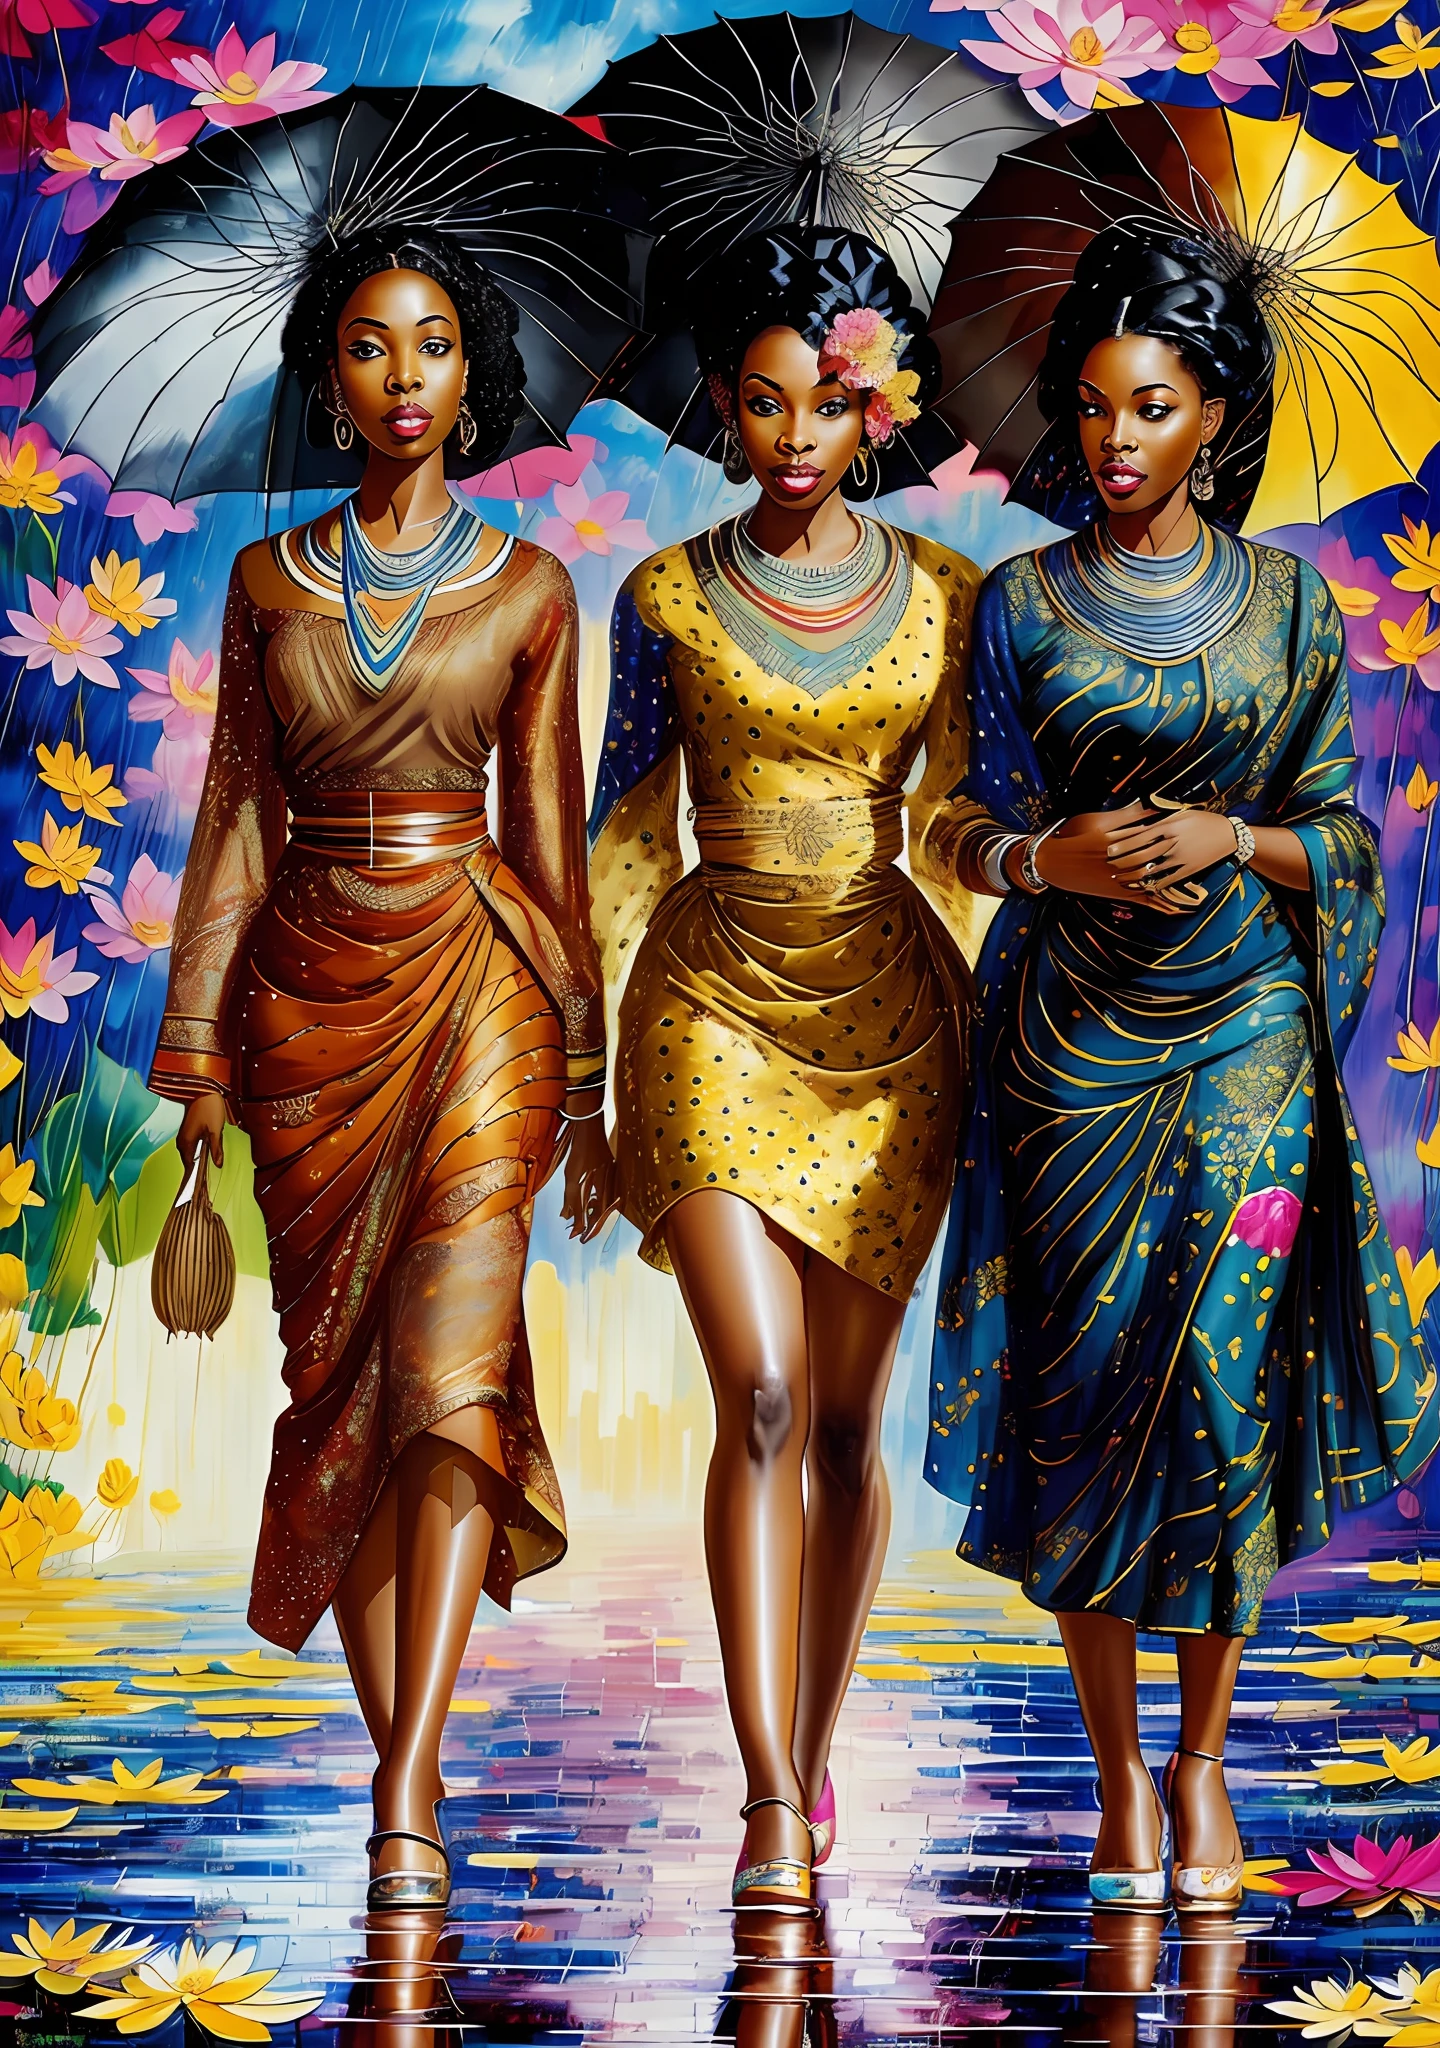 drei schwarze Frauen in afrikanischer Kleidung, mit Regenschirmen im Regen spazieren mit Lotusblumen, schönes Gemälde of friends, schöne Frauen, von Charles Roka, inspirierende Kunst, schönes Gemälde, elegantes Ölgemälde, anmutig auf einem Lotus stehend, Schöne Mädchen, Kunstmalerei, schönes Gemälde, Farbenfrohes Ölgemälde, wunderschöne Kunst, Göttinnen, Ölkunst, komplizierte Ölgemälde,  wunderschöne Kunstwork, hochauflösend, 4k --auto --s2